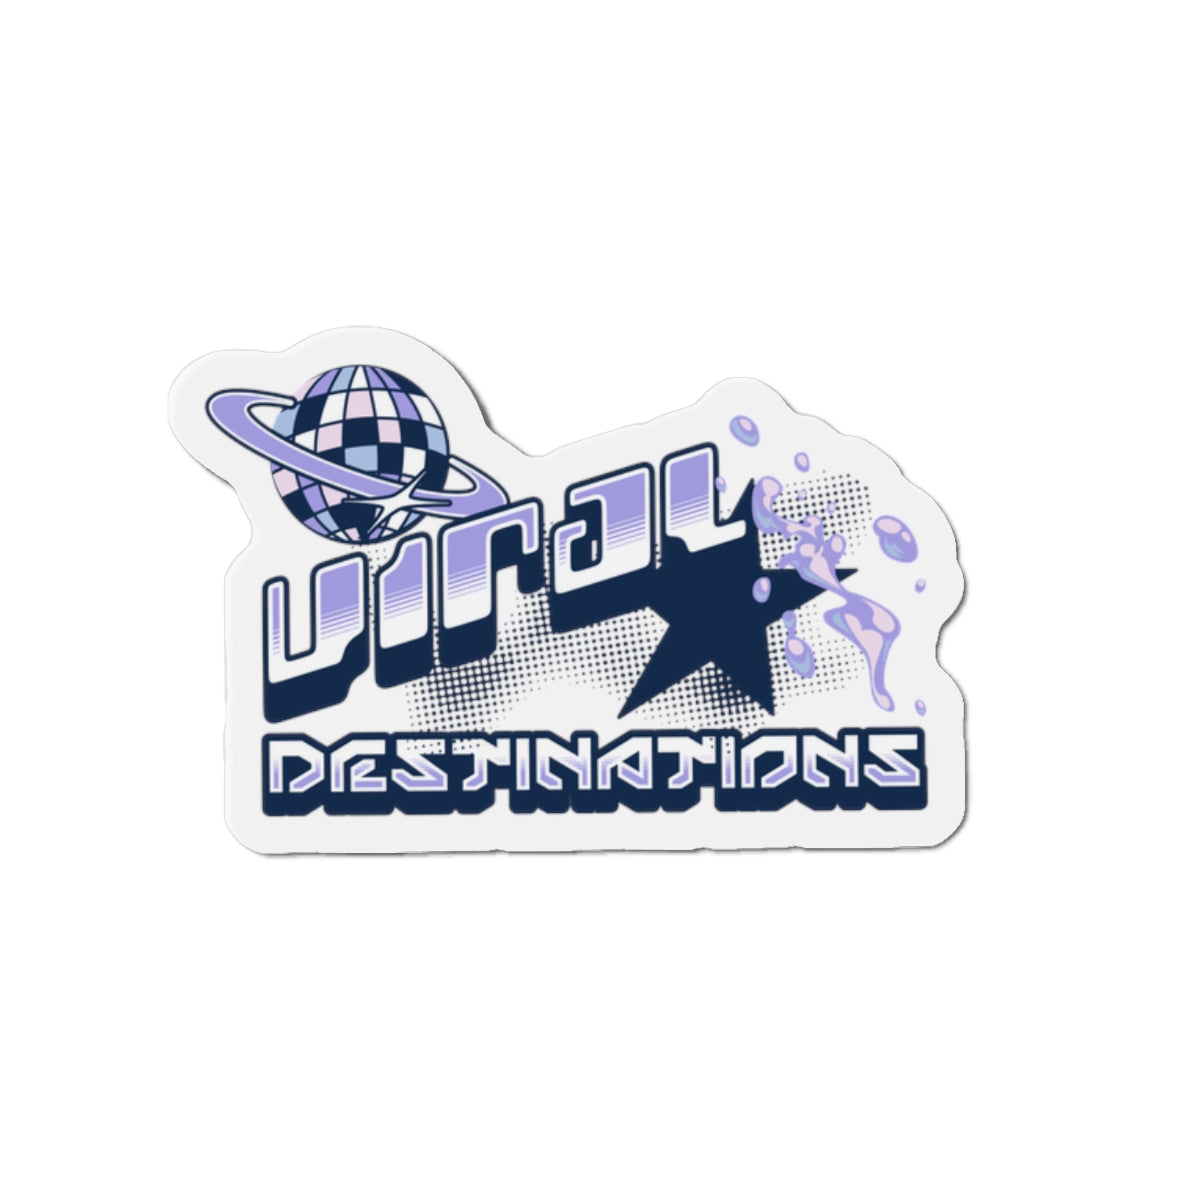 ViralDestinations logo Die-Cut Magnets